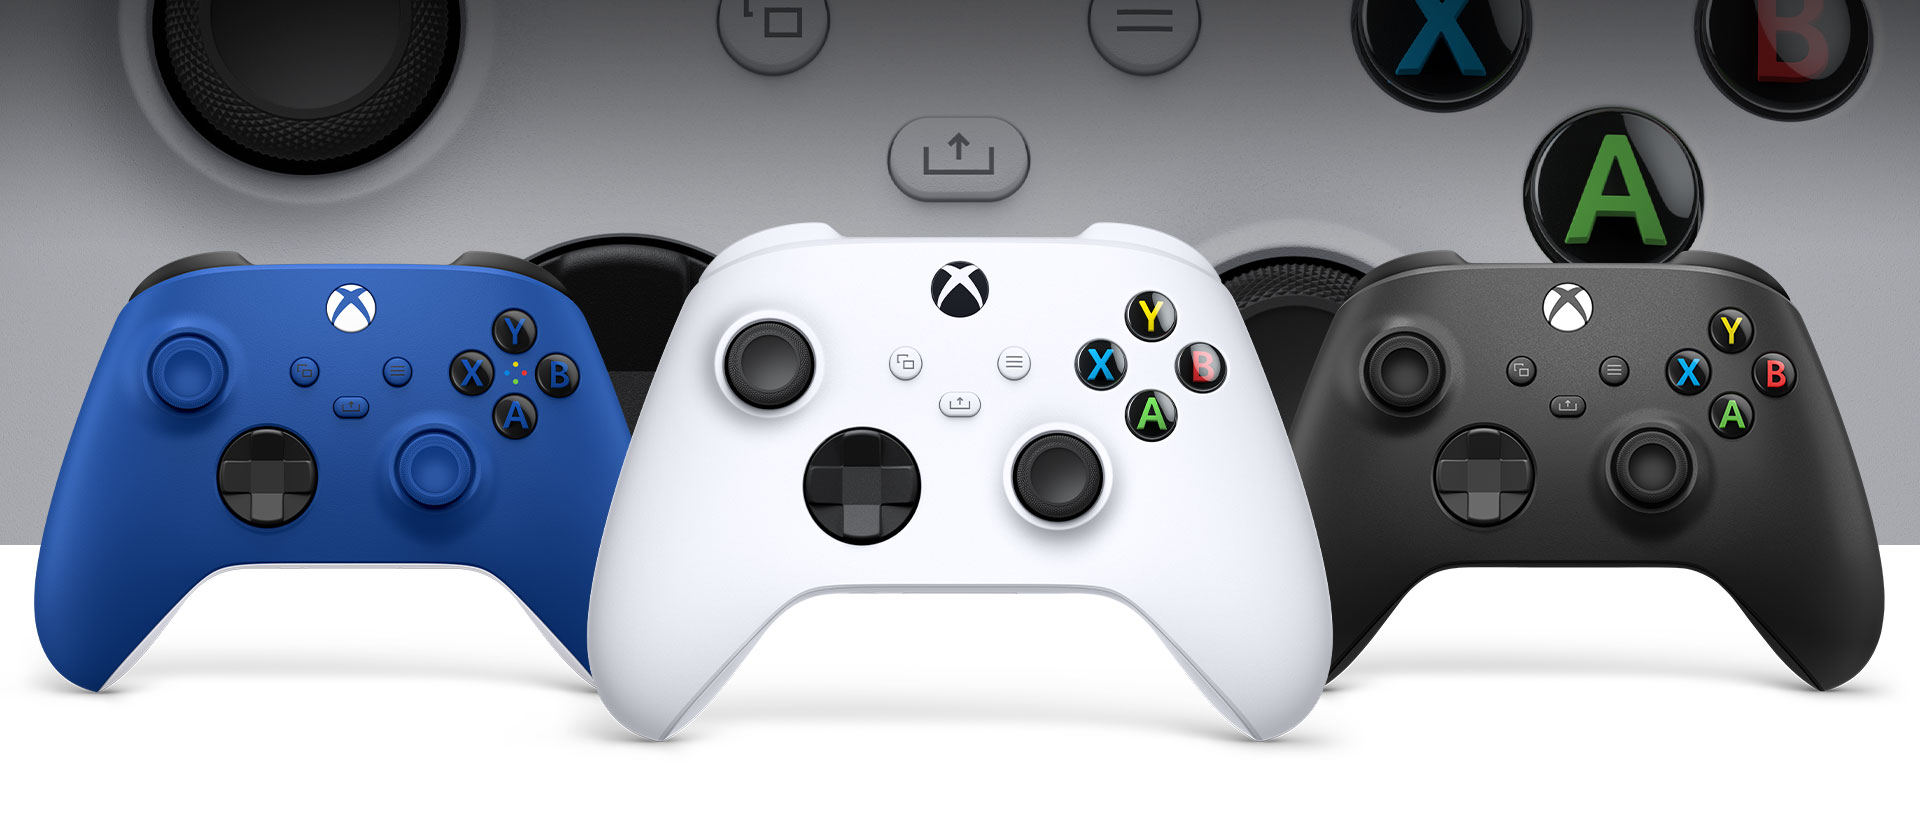 Carbon xbox ve shock blue oyun kumandalarının yanında önde duran Xbox Robot oyun kumandası